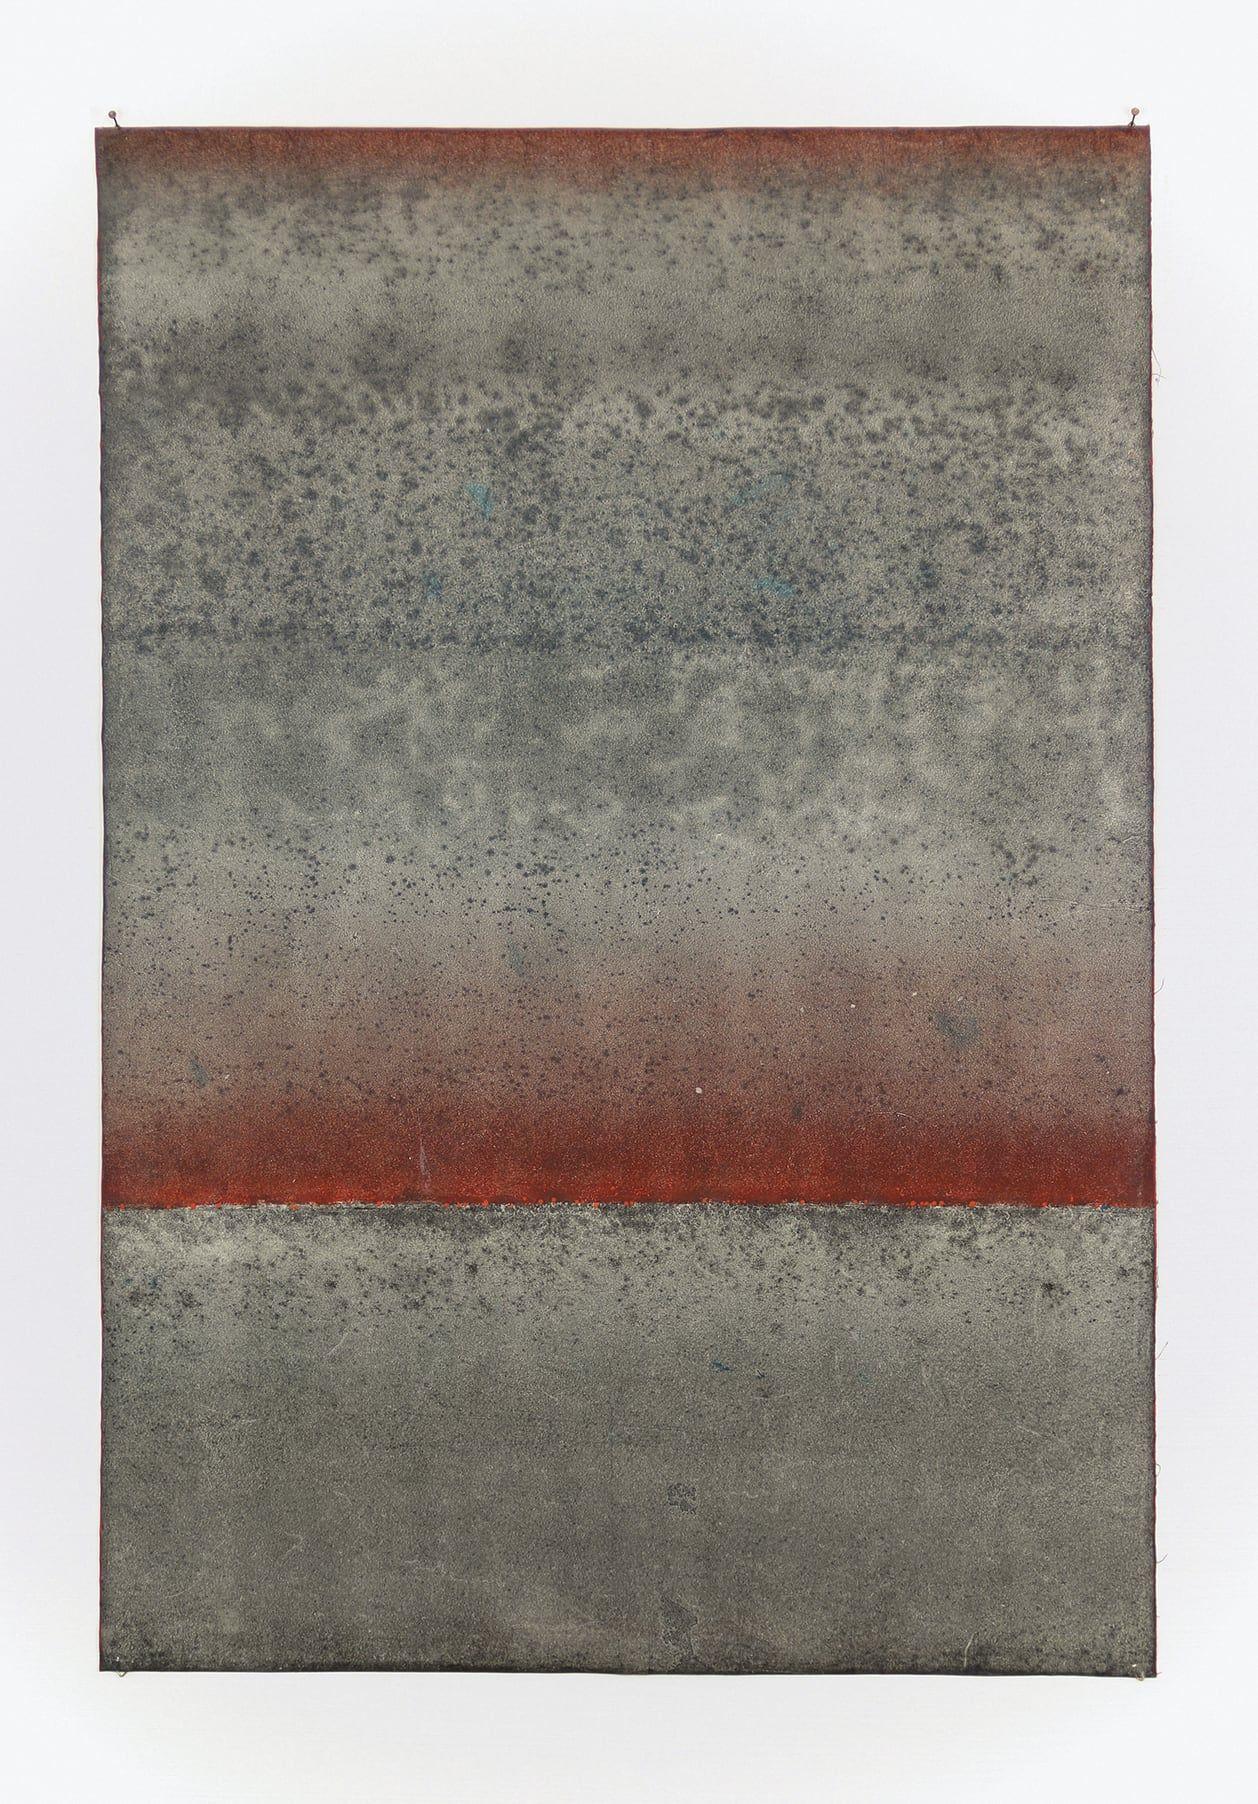 Abstract Painting Elvire Ferle - Sans titre VI de Ferle - Peinture abstraite, lignes, tons rouges et gris, spirituel